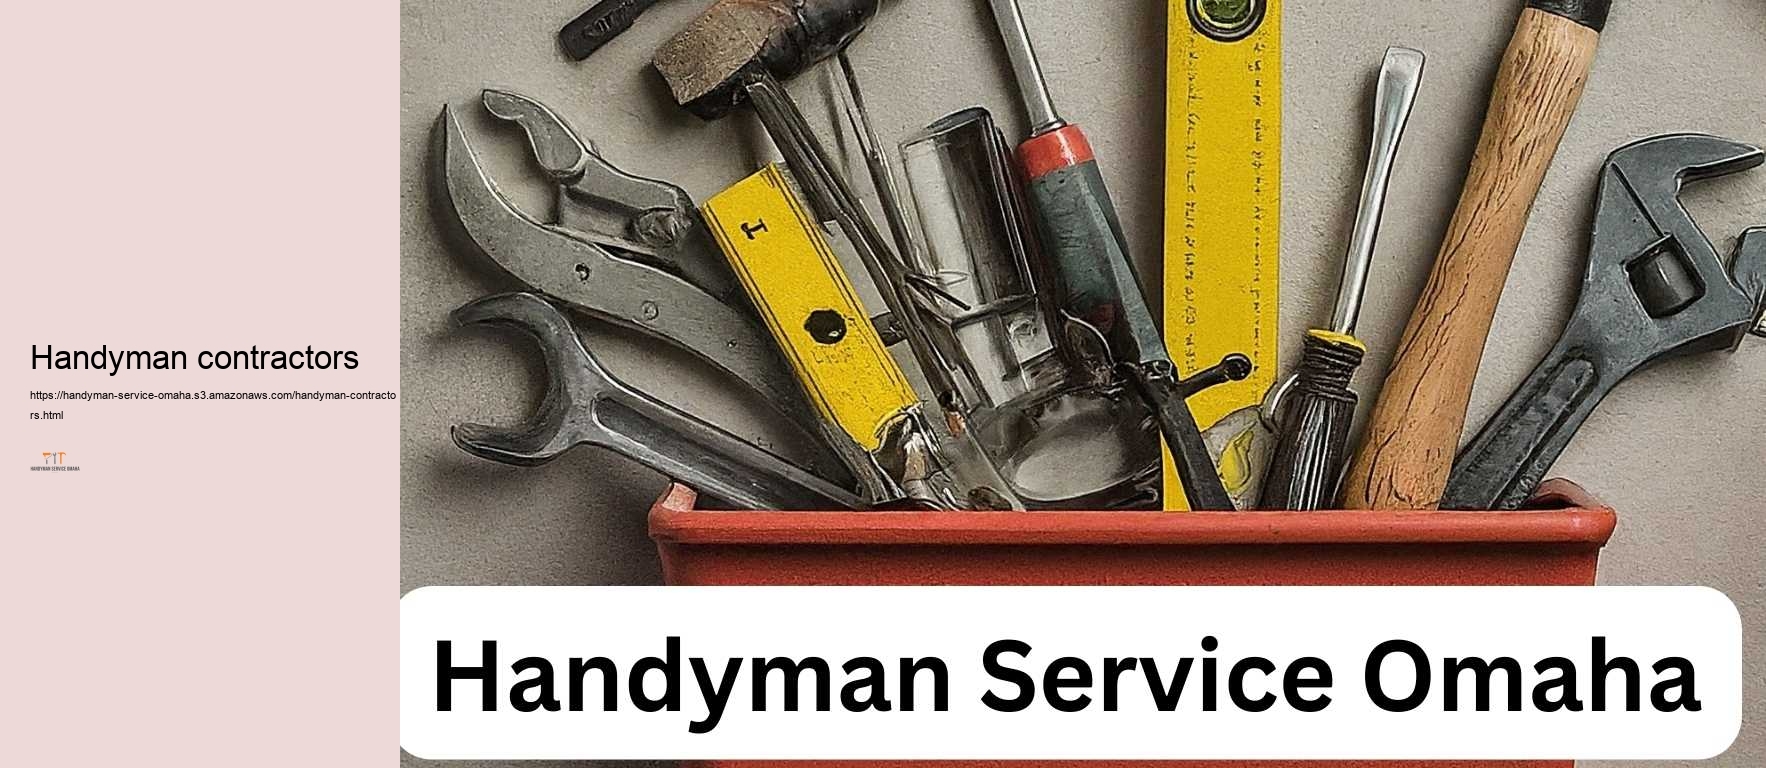 Handyman contractors